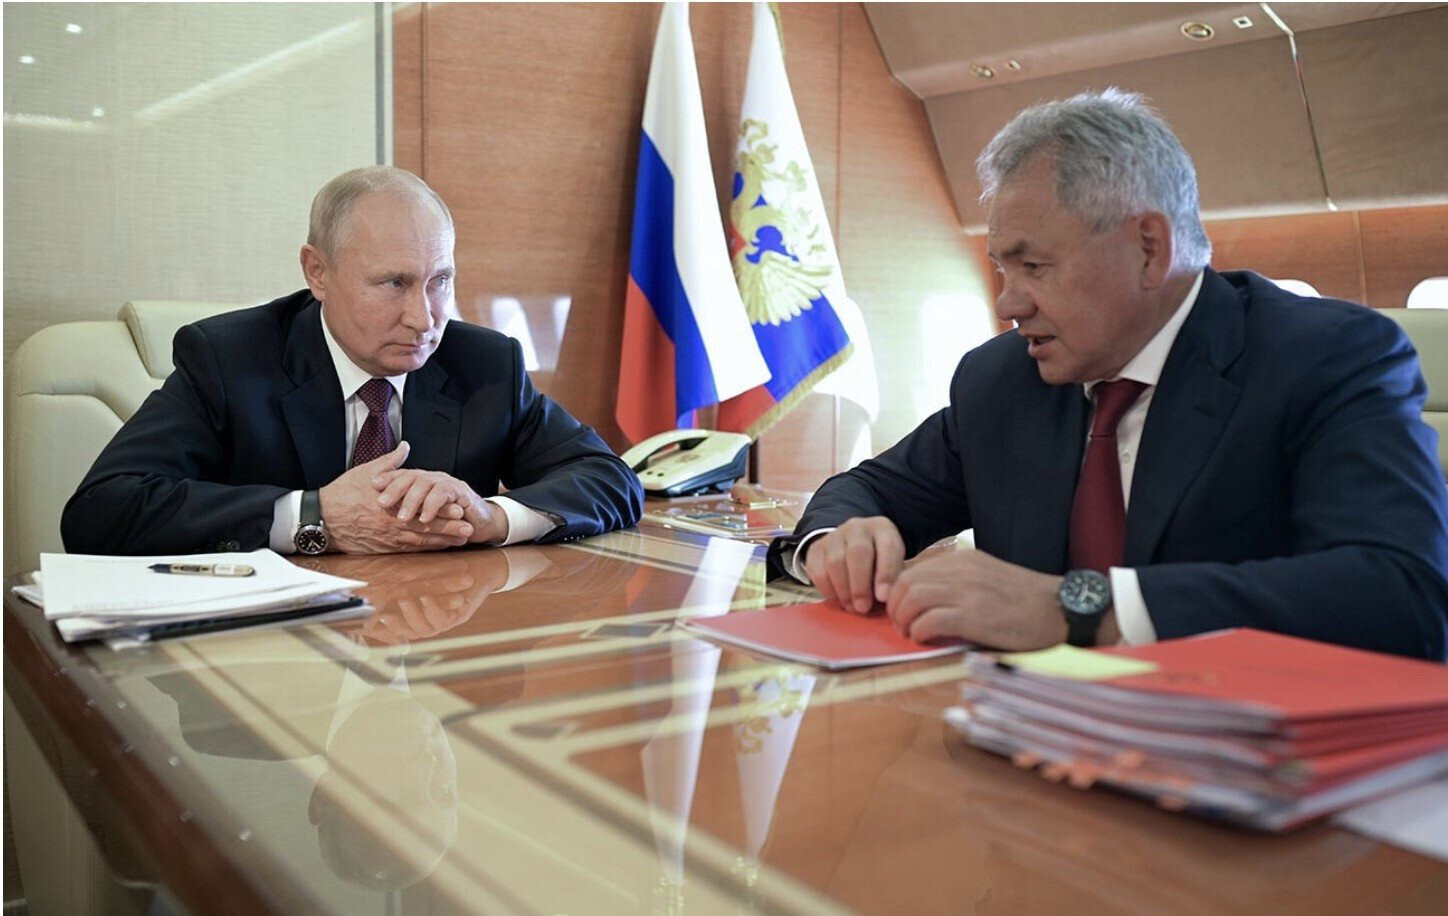 'Điện Kremlin bay' - Chuyên cơ chở Tổng thống Putin có gì đặc biệt? - 4